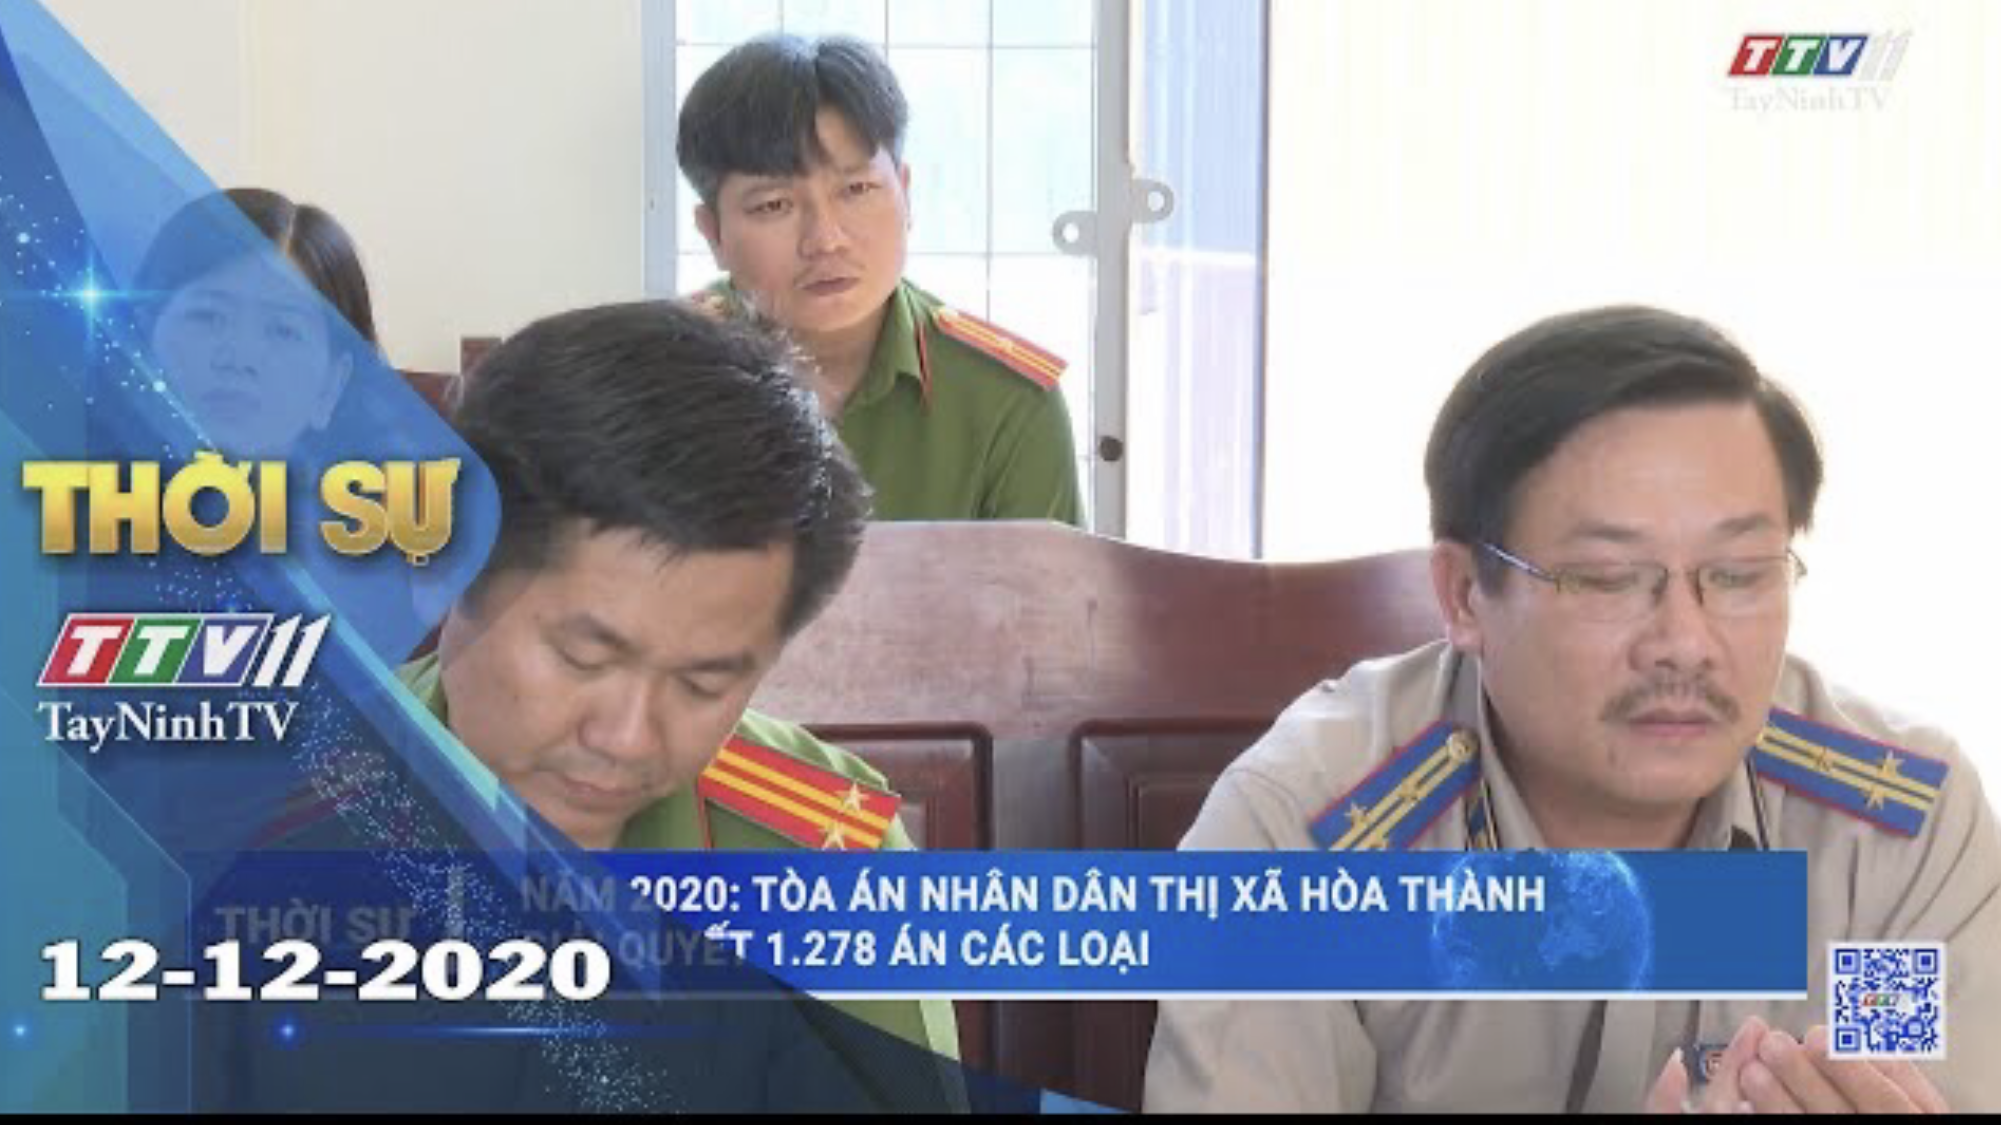 Thời sự Tây Ninh 12-12-2020 | Tin tức hôm nay | TayNinhTV